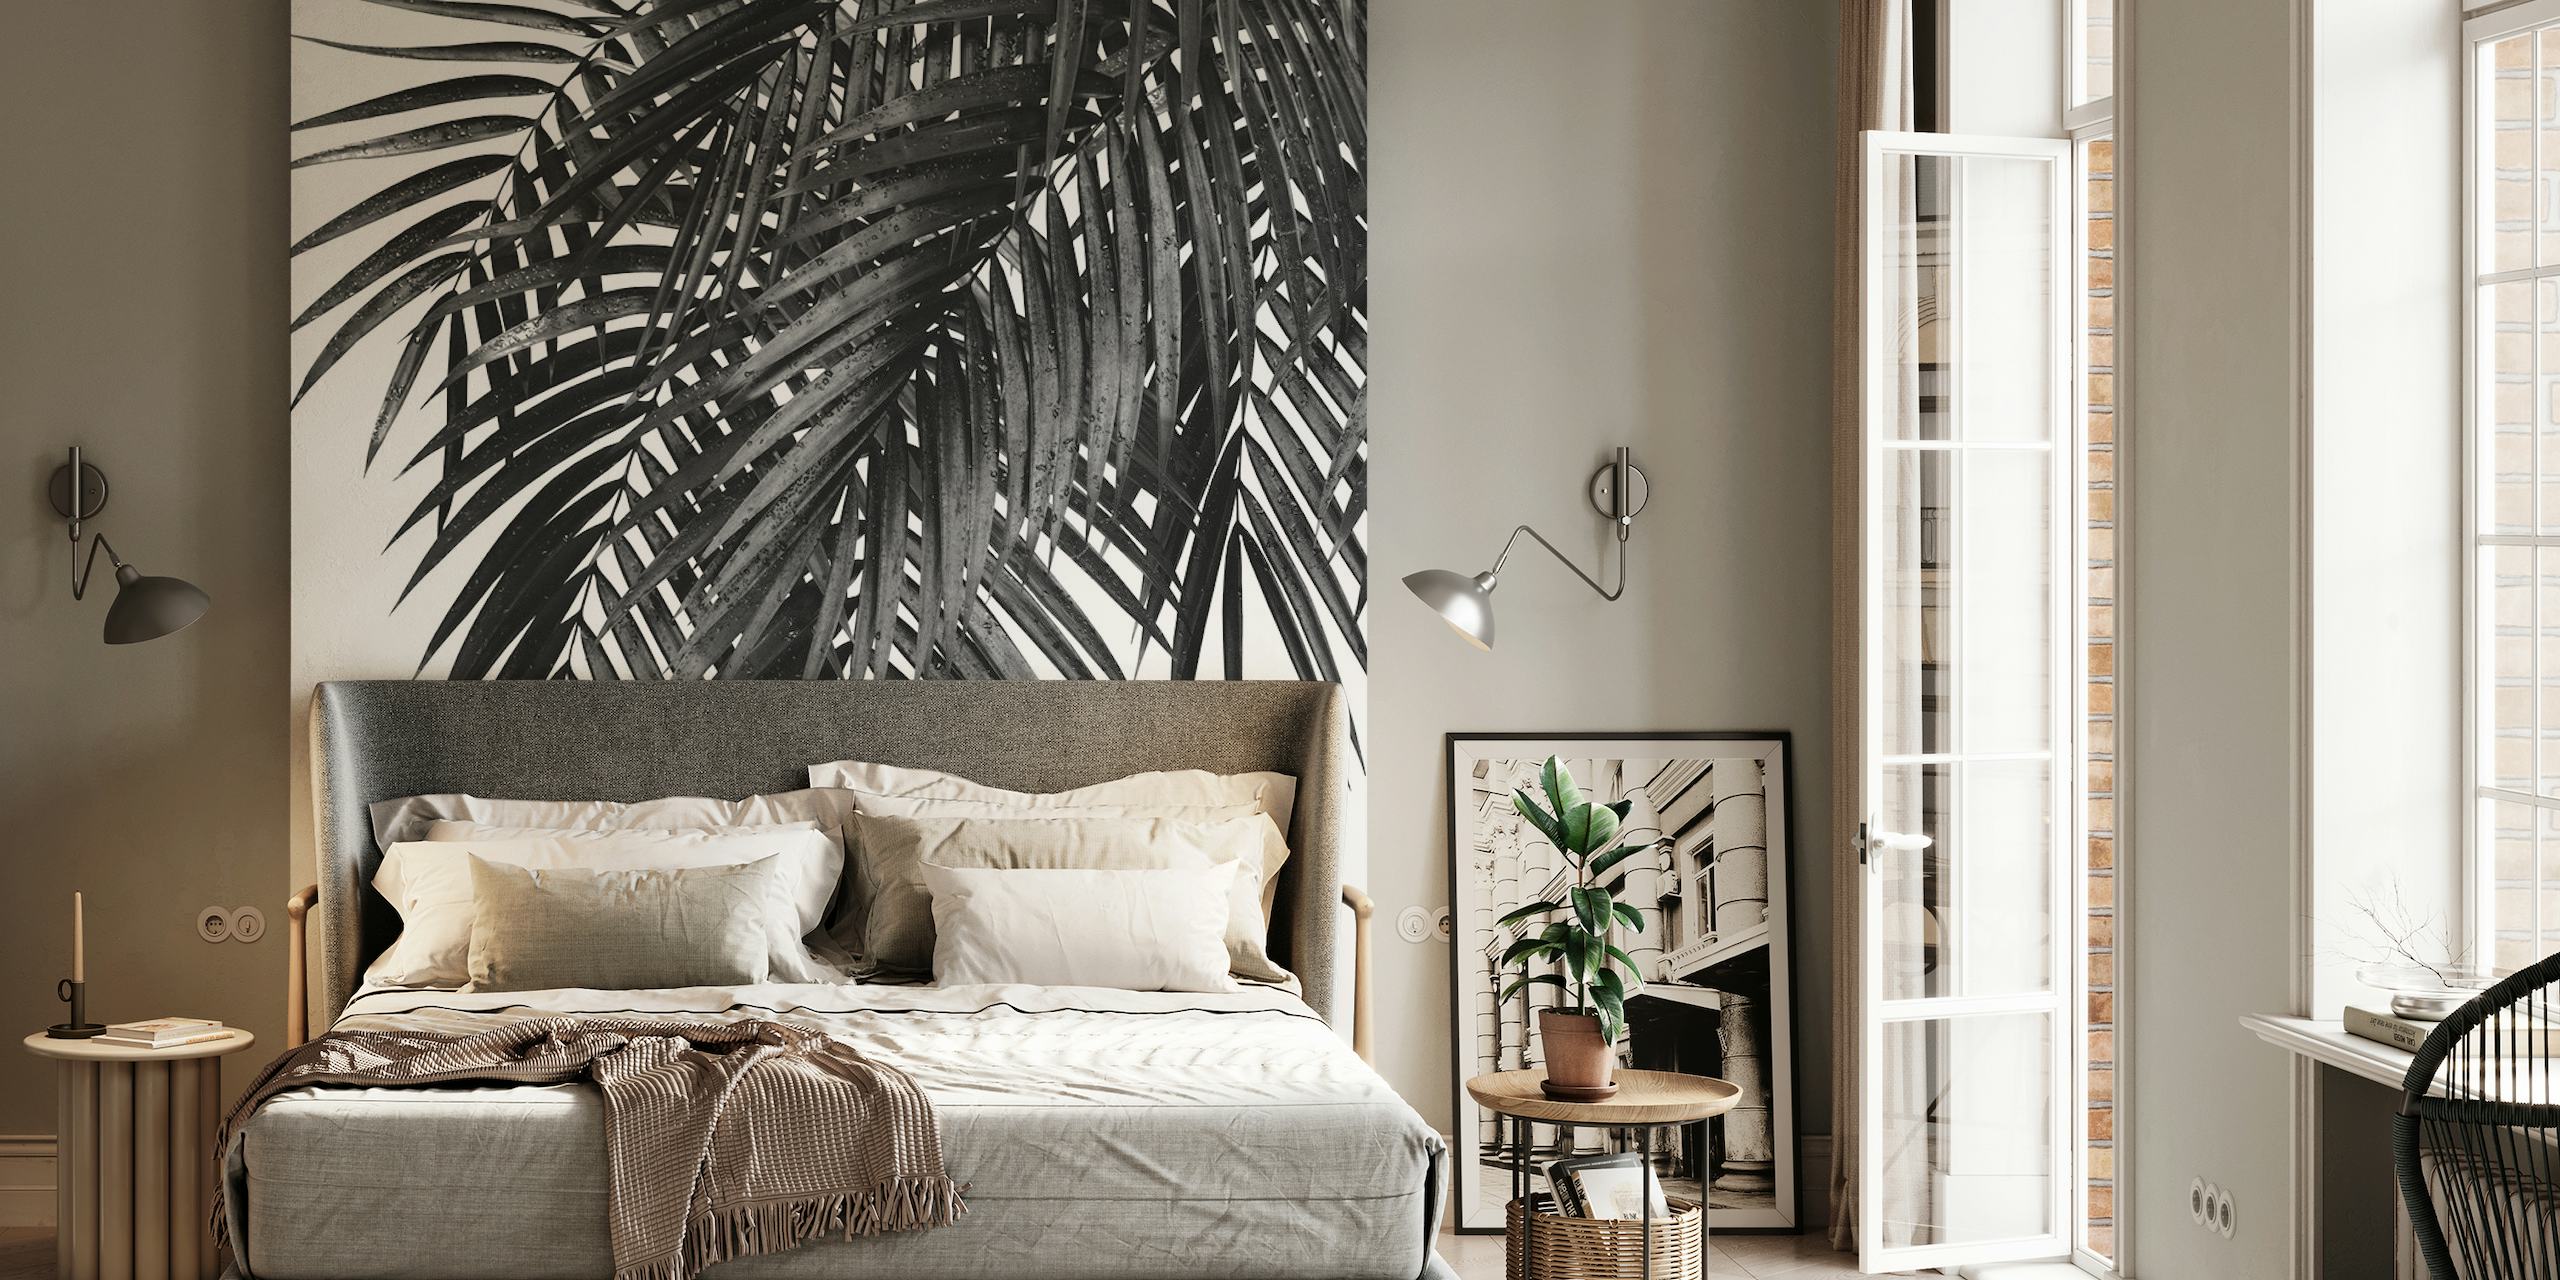 Schwarz-weiße Fototapete mit Palmenblättern für modernes Innendesign